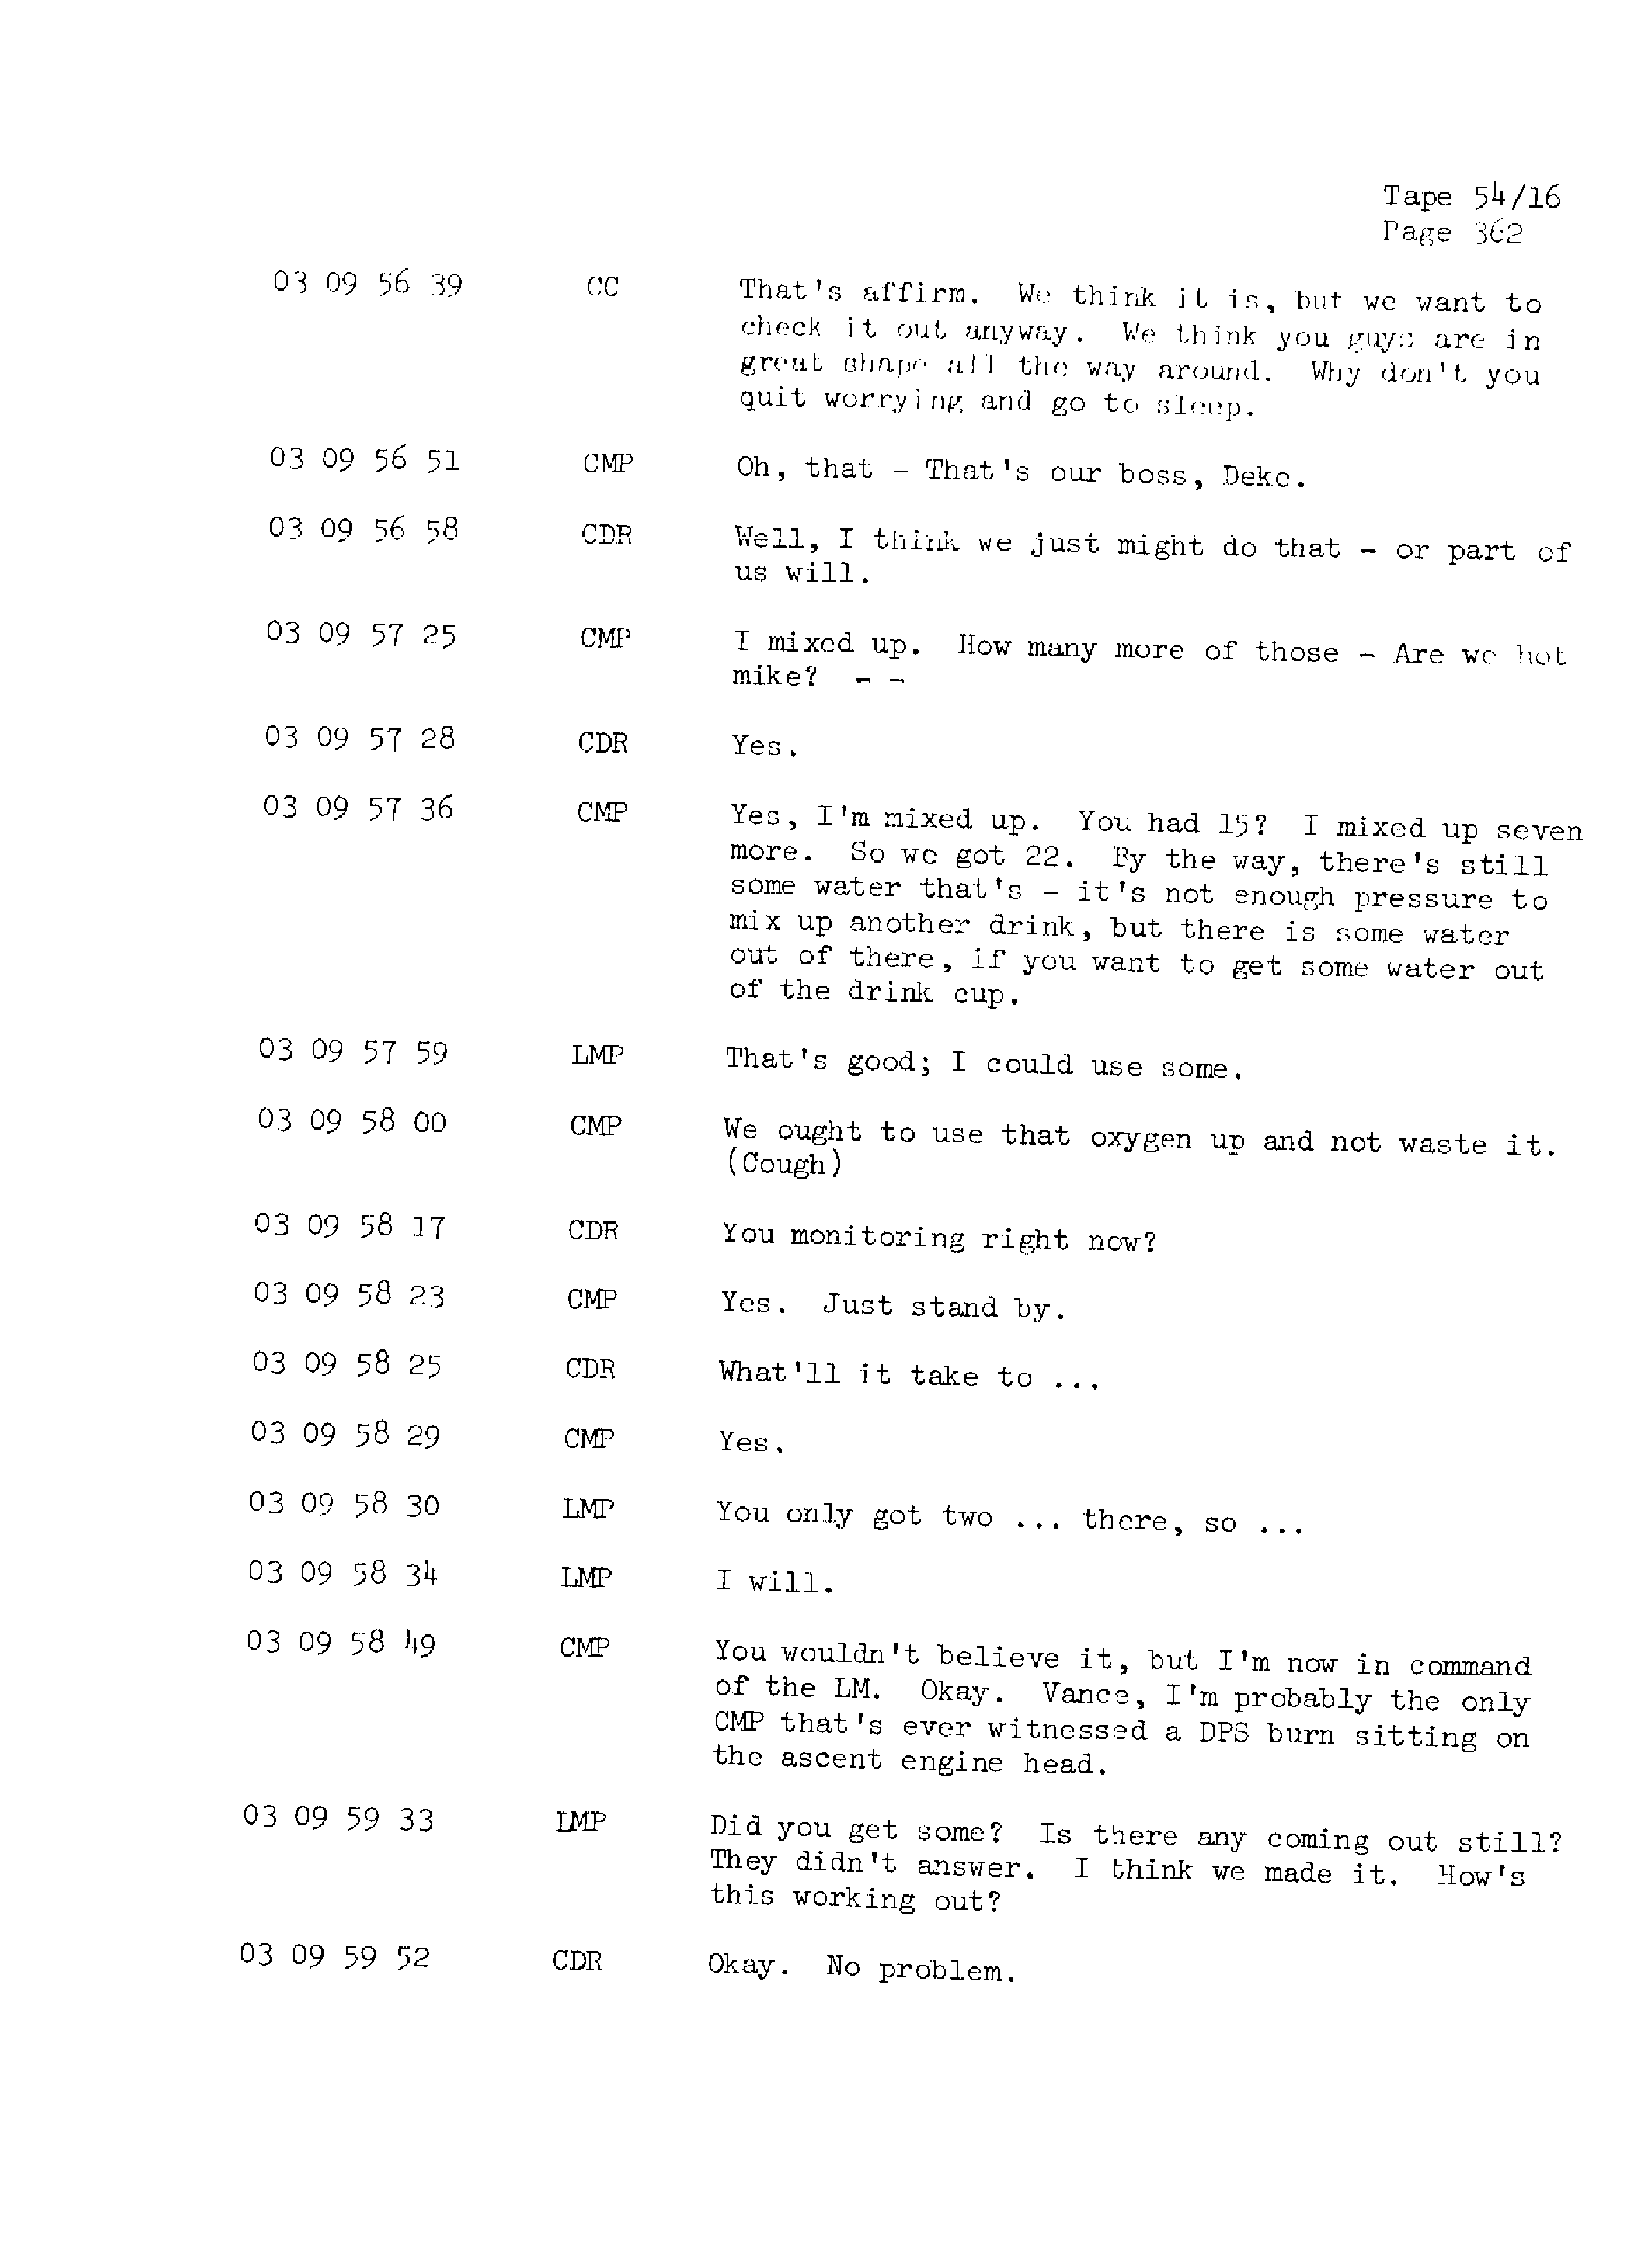 Page 369 of Apollo 13’s original transcript